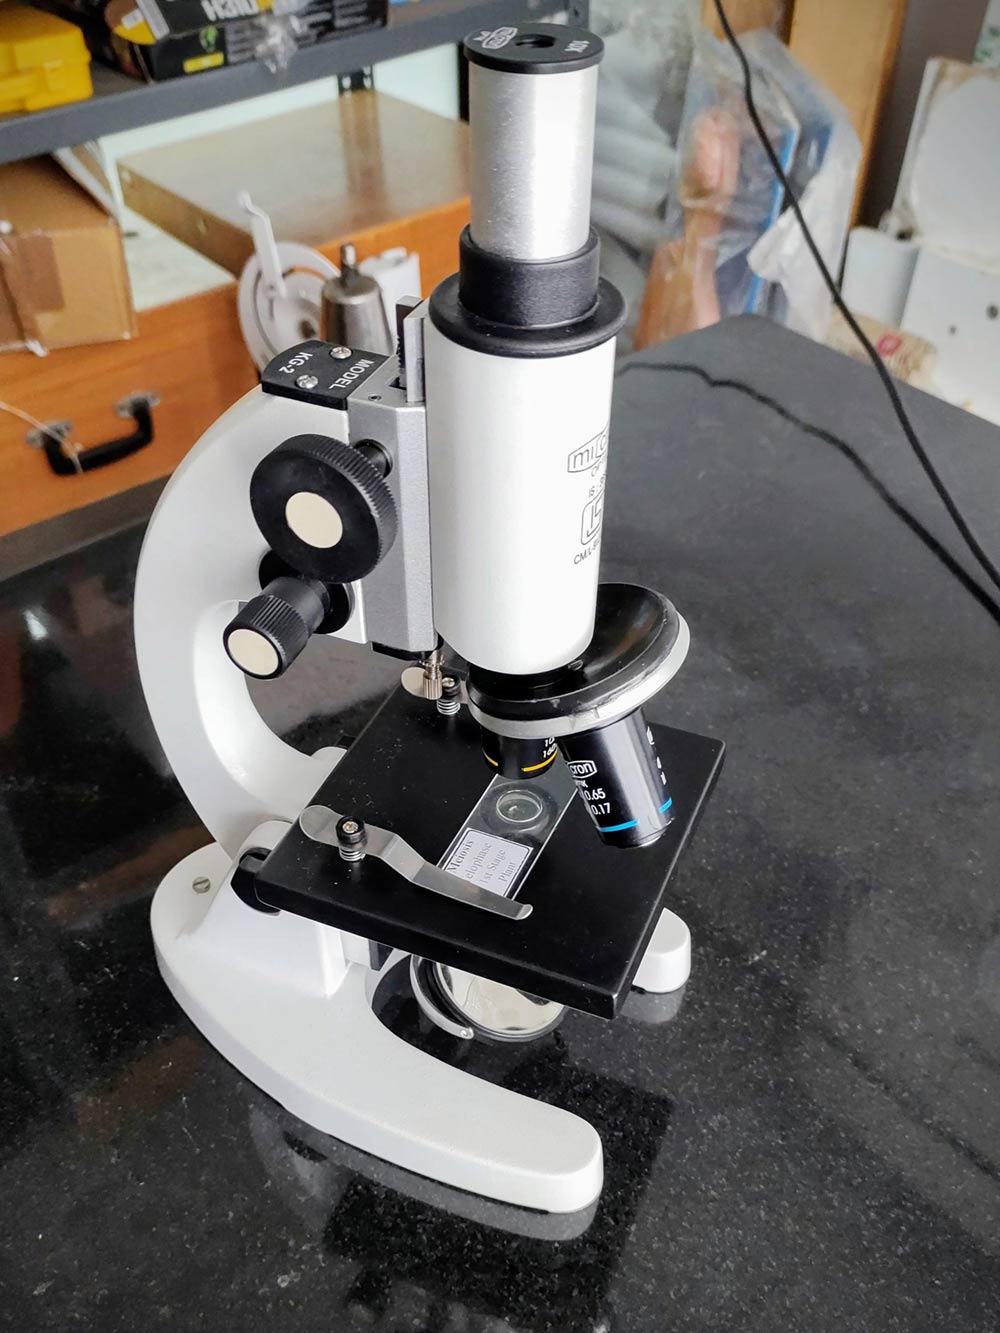 3 levels of Proper Microscope Care | Microscope Maintenance Checklist ...